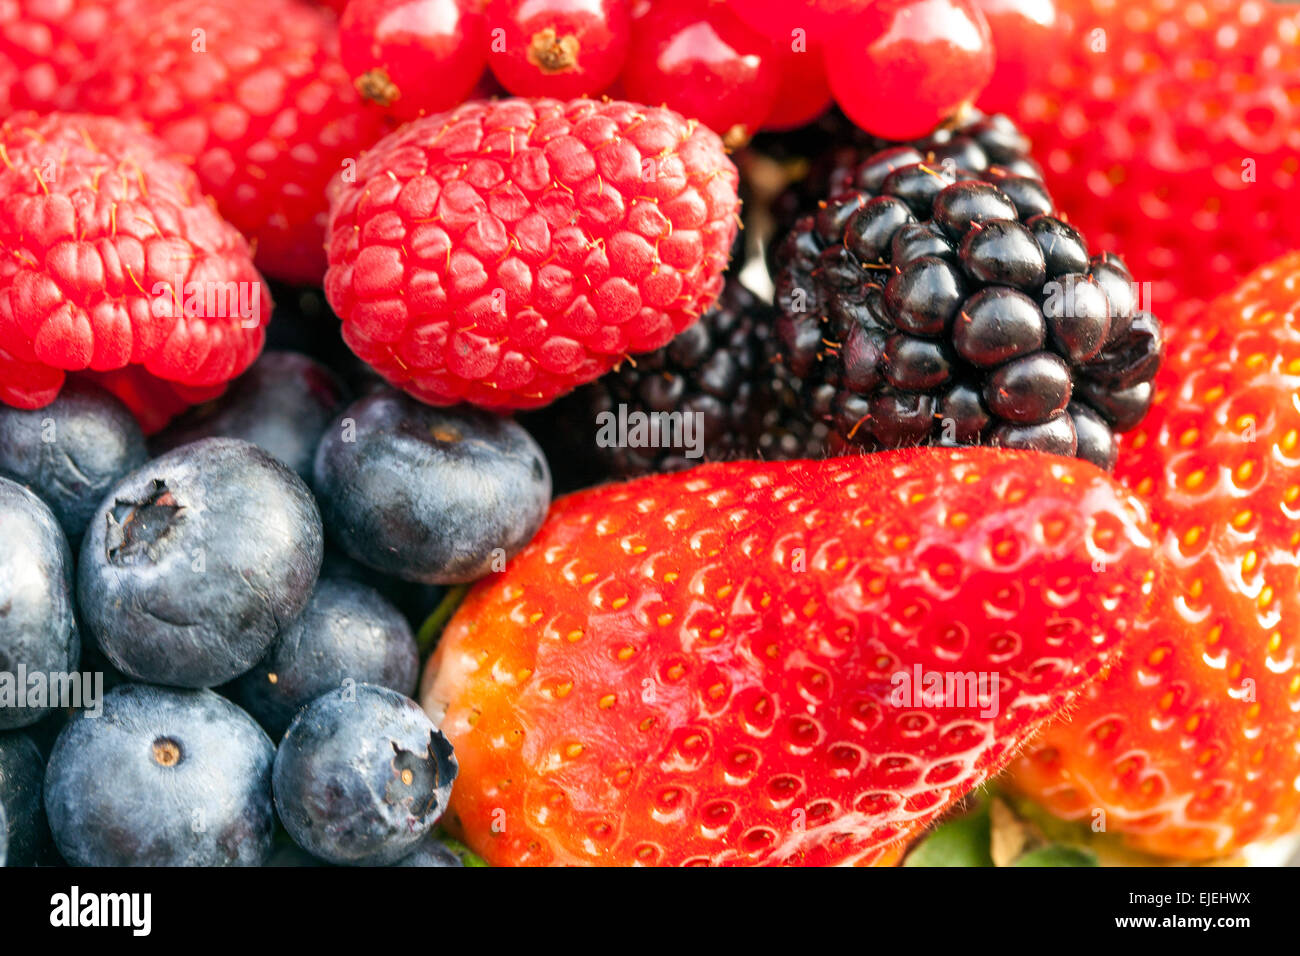 Mûres, framboises, fraises, bleuets gros plan sur la texture DeliciousFruits baies juteuses Banque D'Images